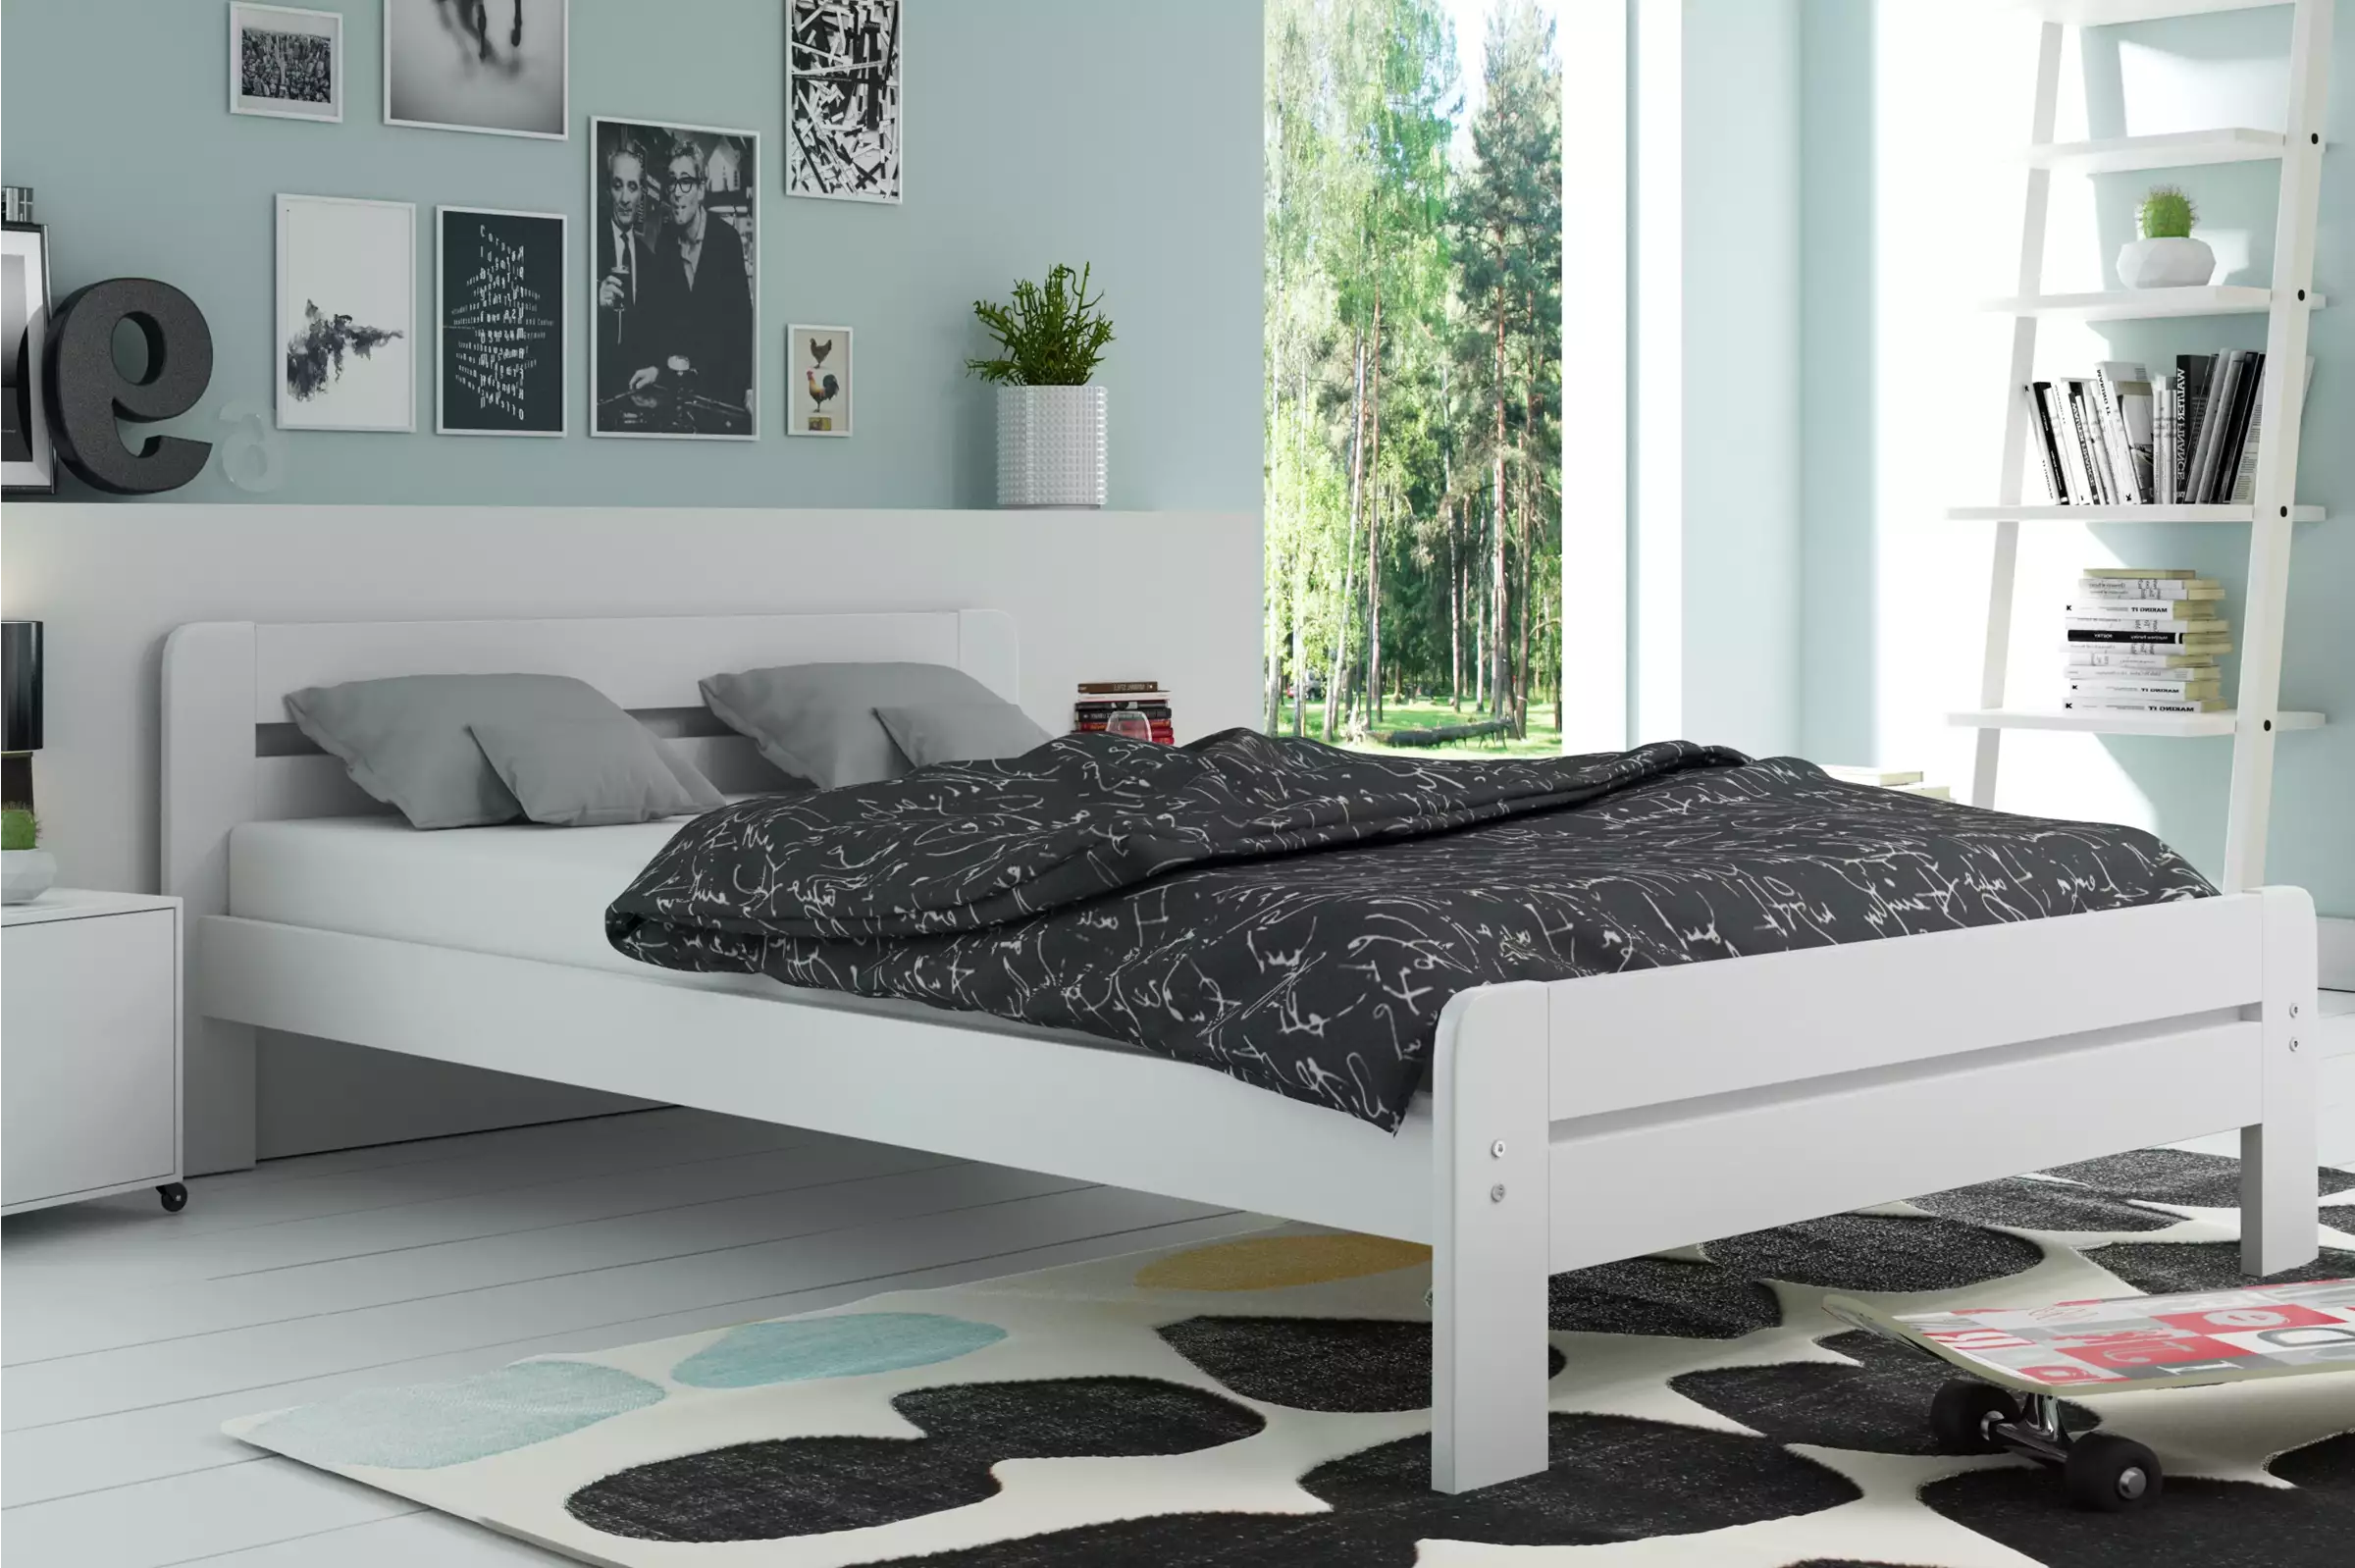 łóżko do sypialni drewniane